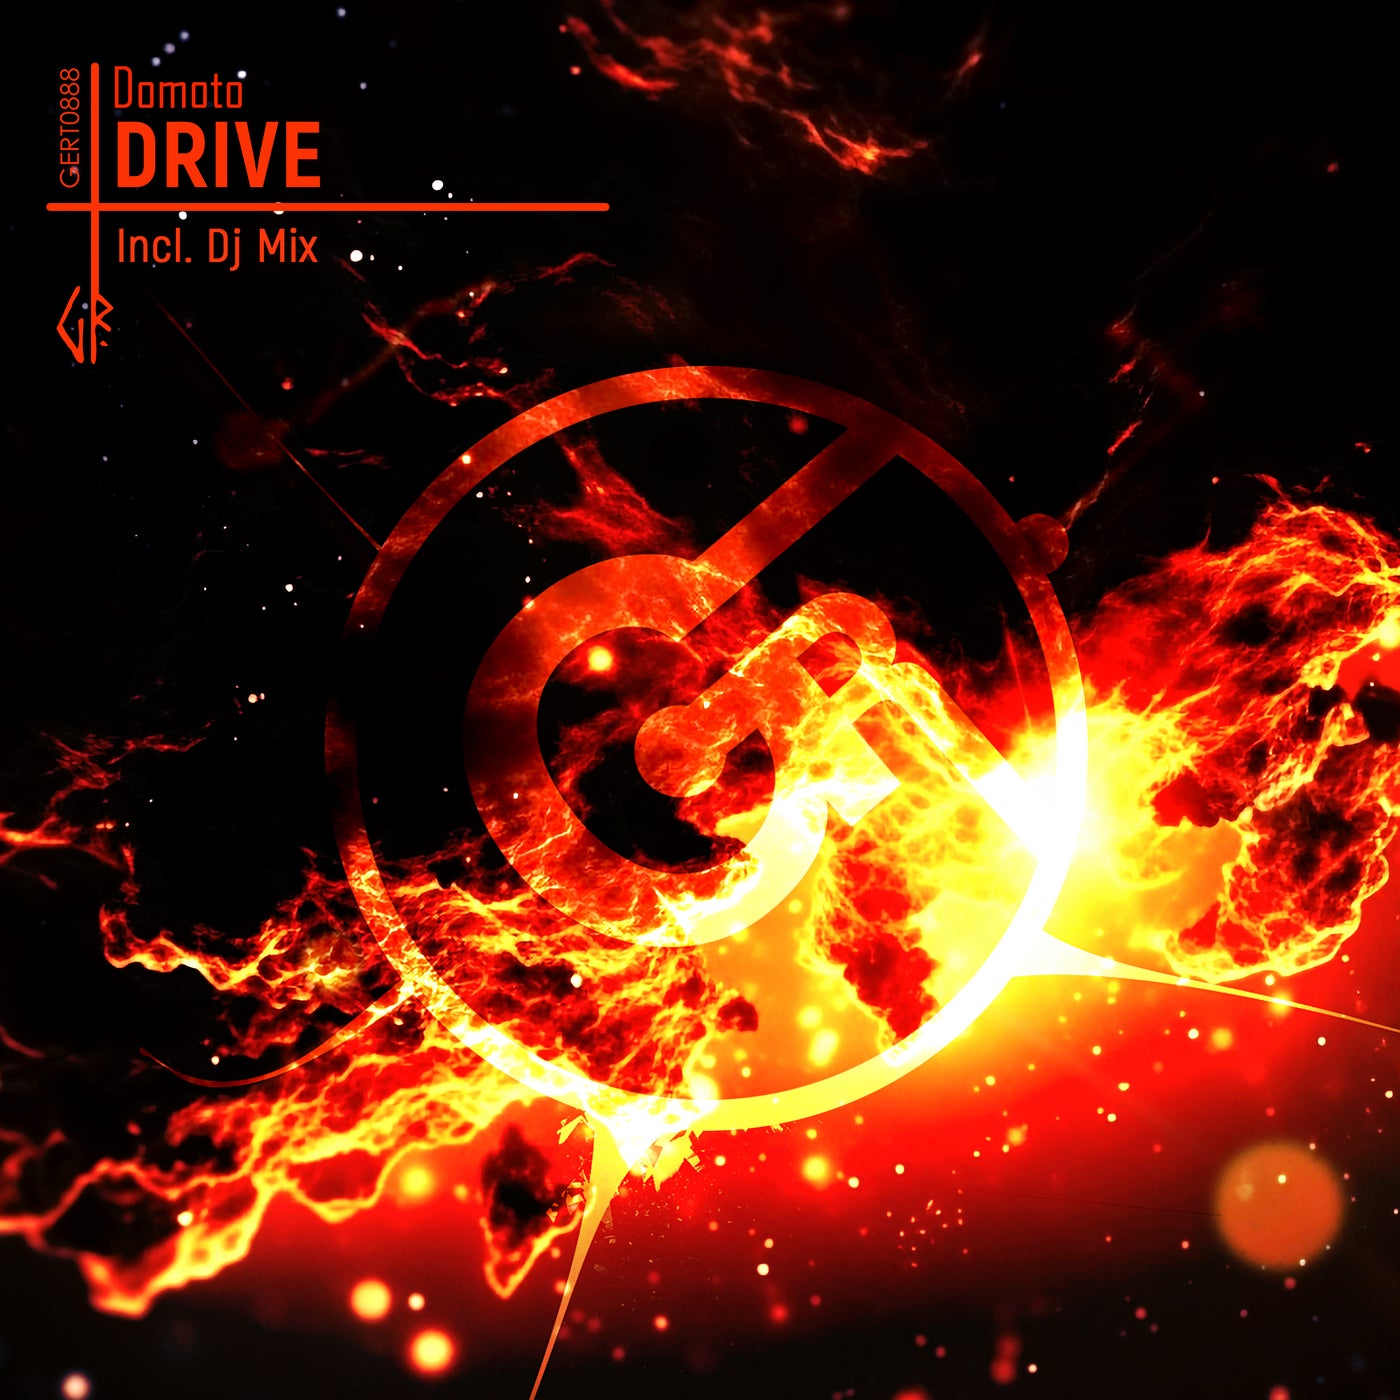 Drive (Incl. Dj Mix)